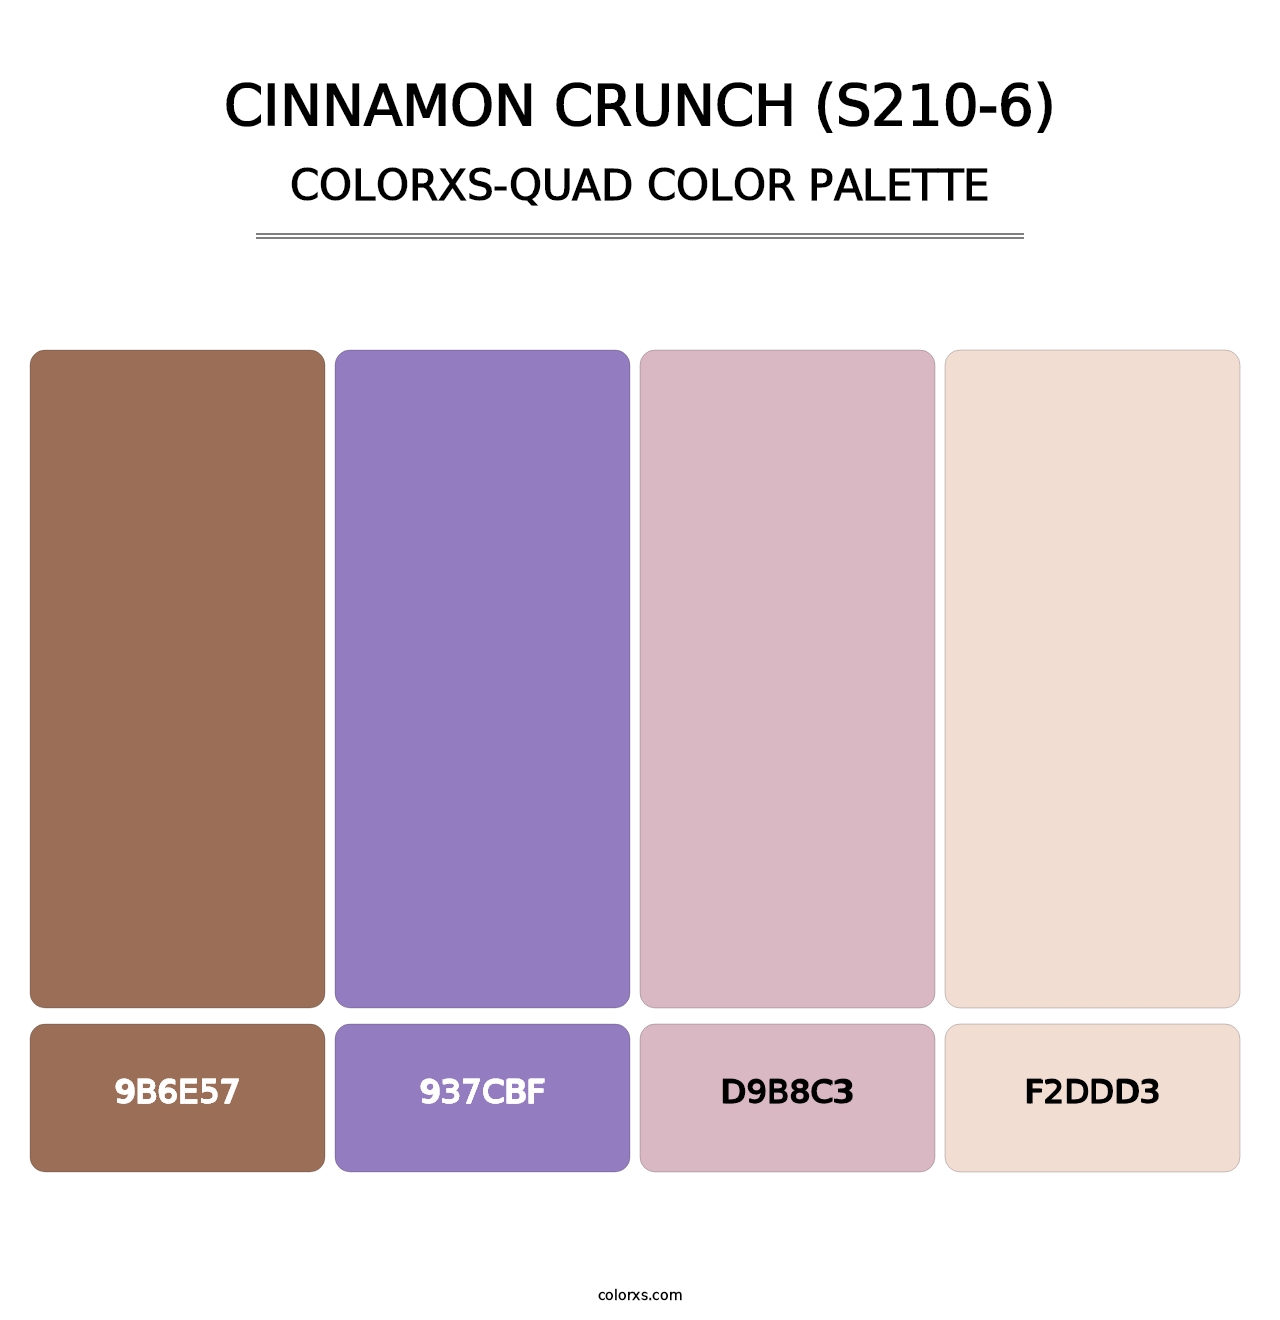 Cinnamon Crunch (S210-6) - Colorxs Quad Palette